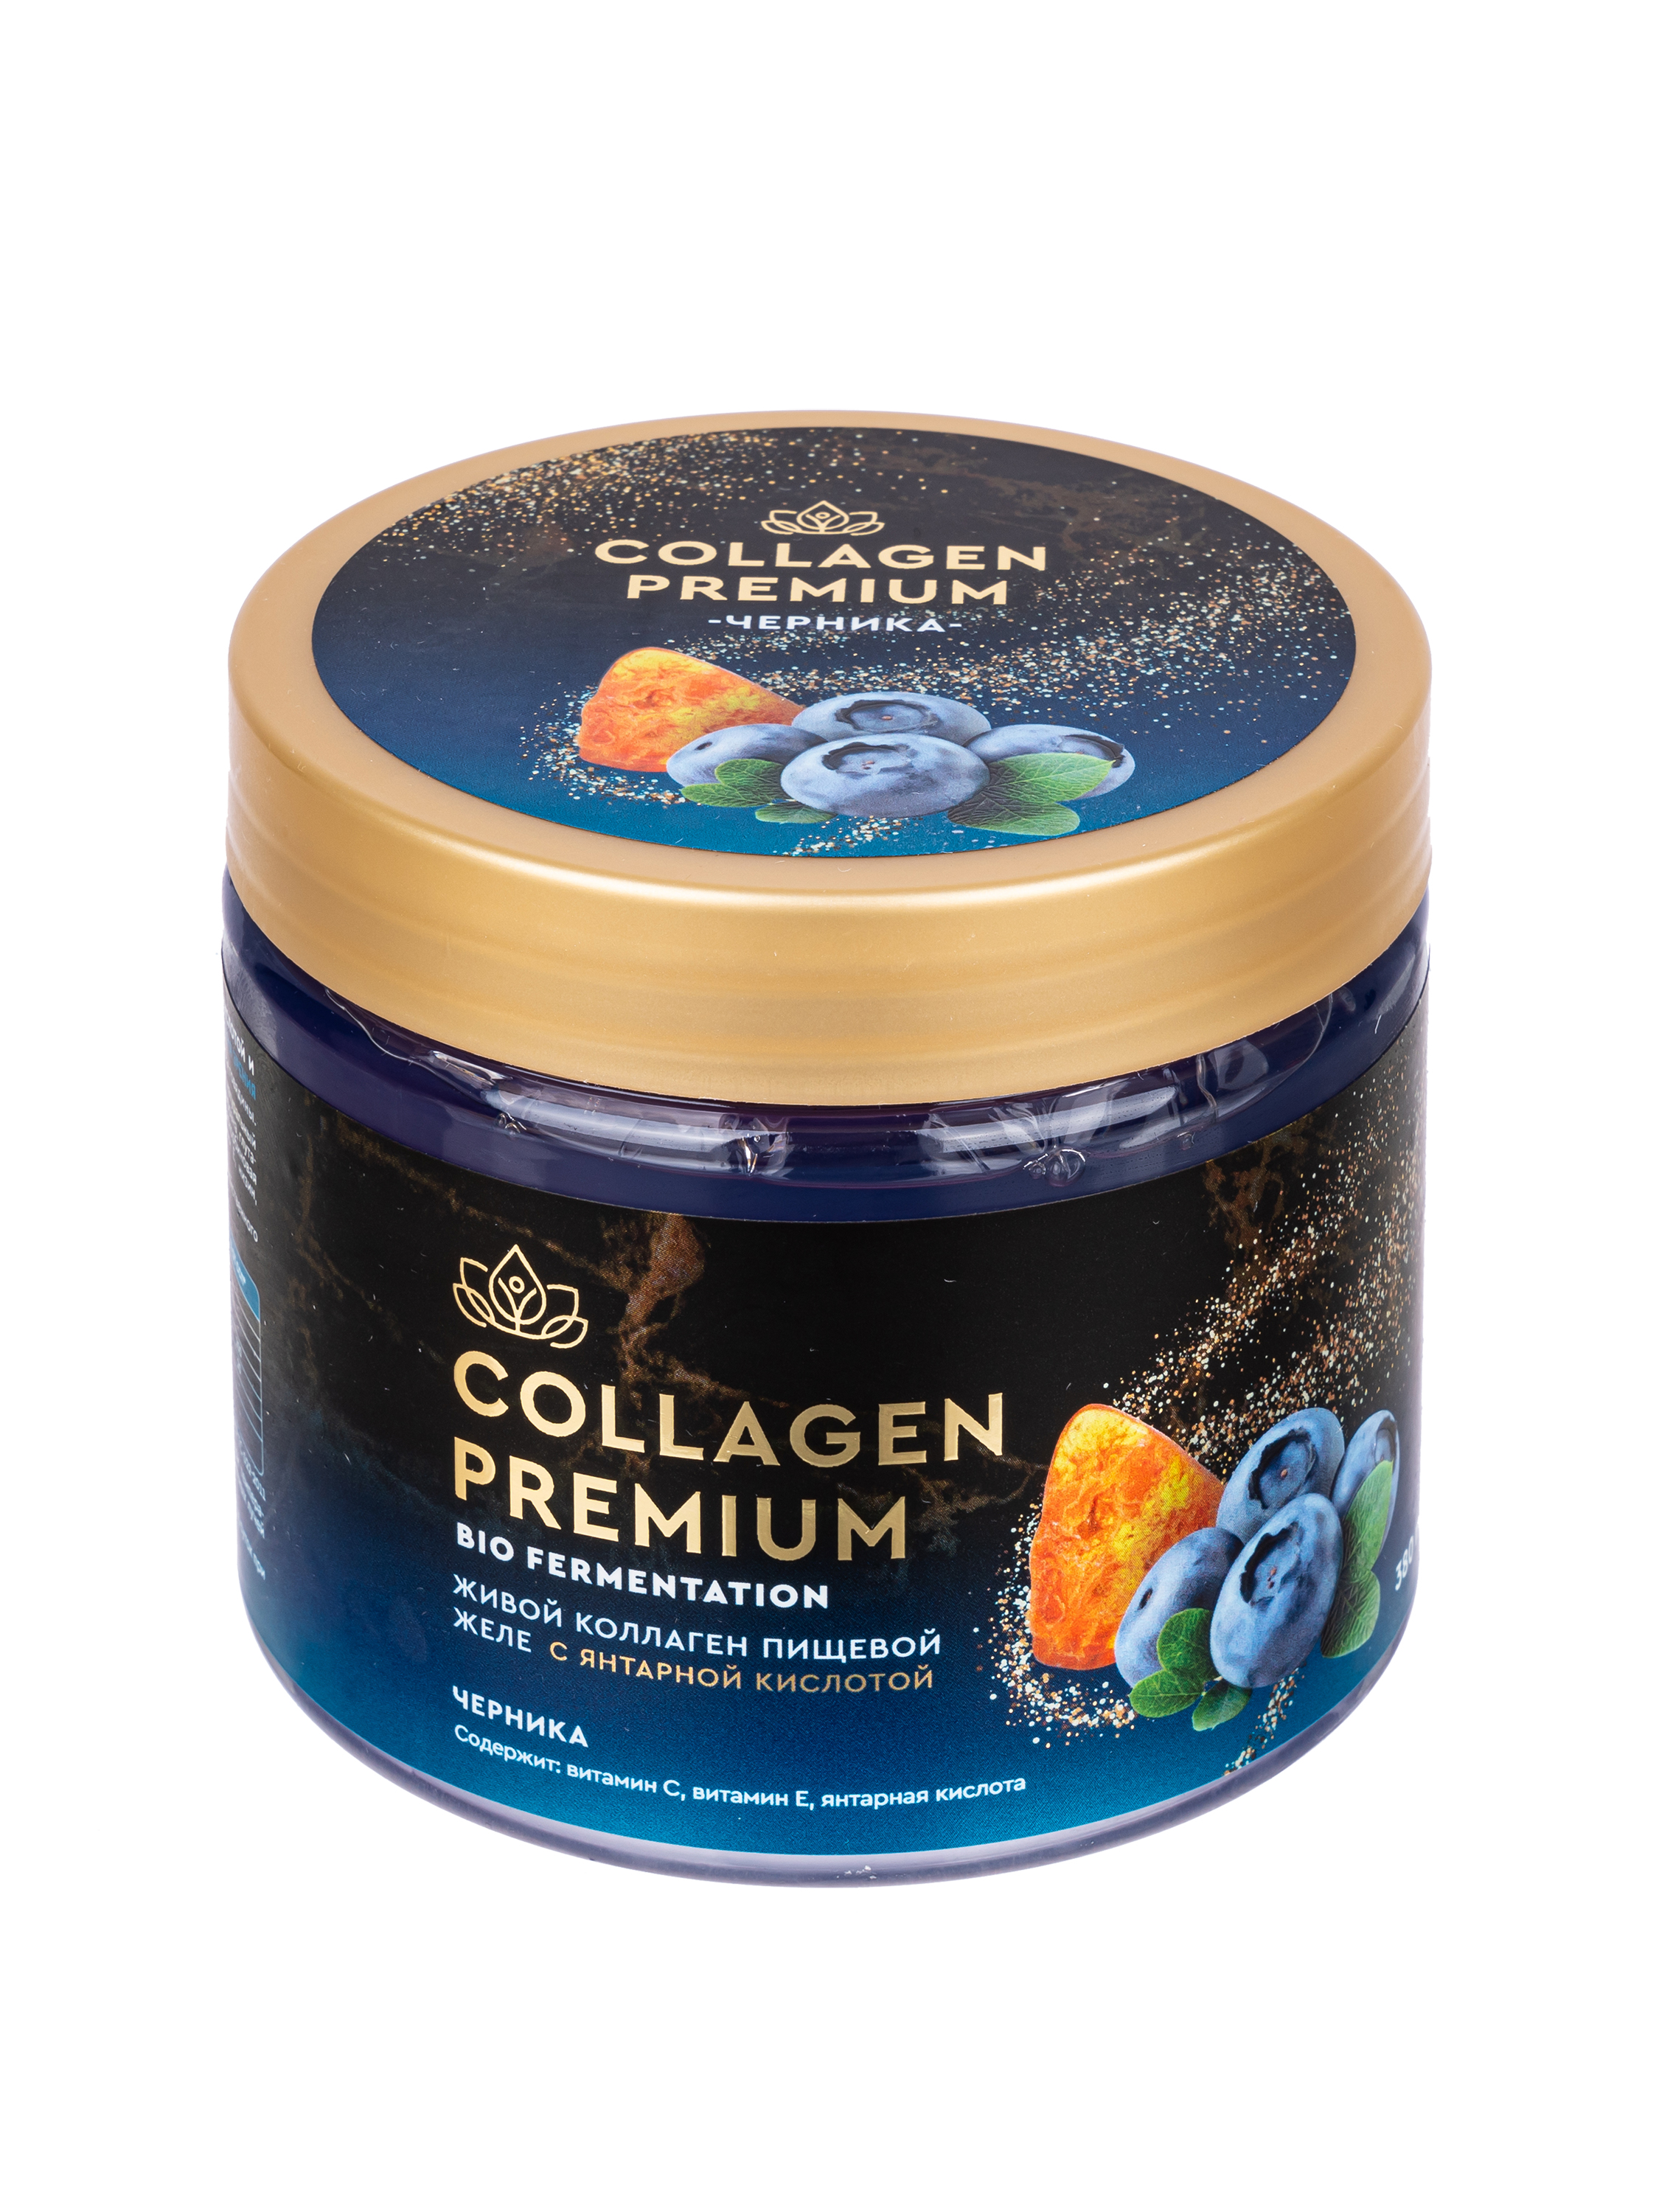 Collagen-premium c Янтарной кислотой и соком черники 380 мл